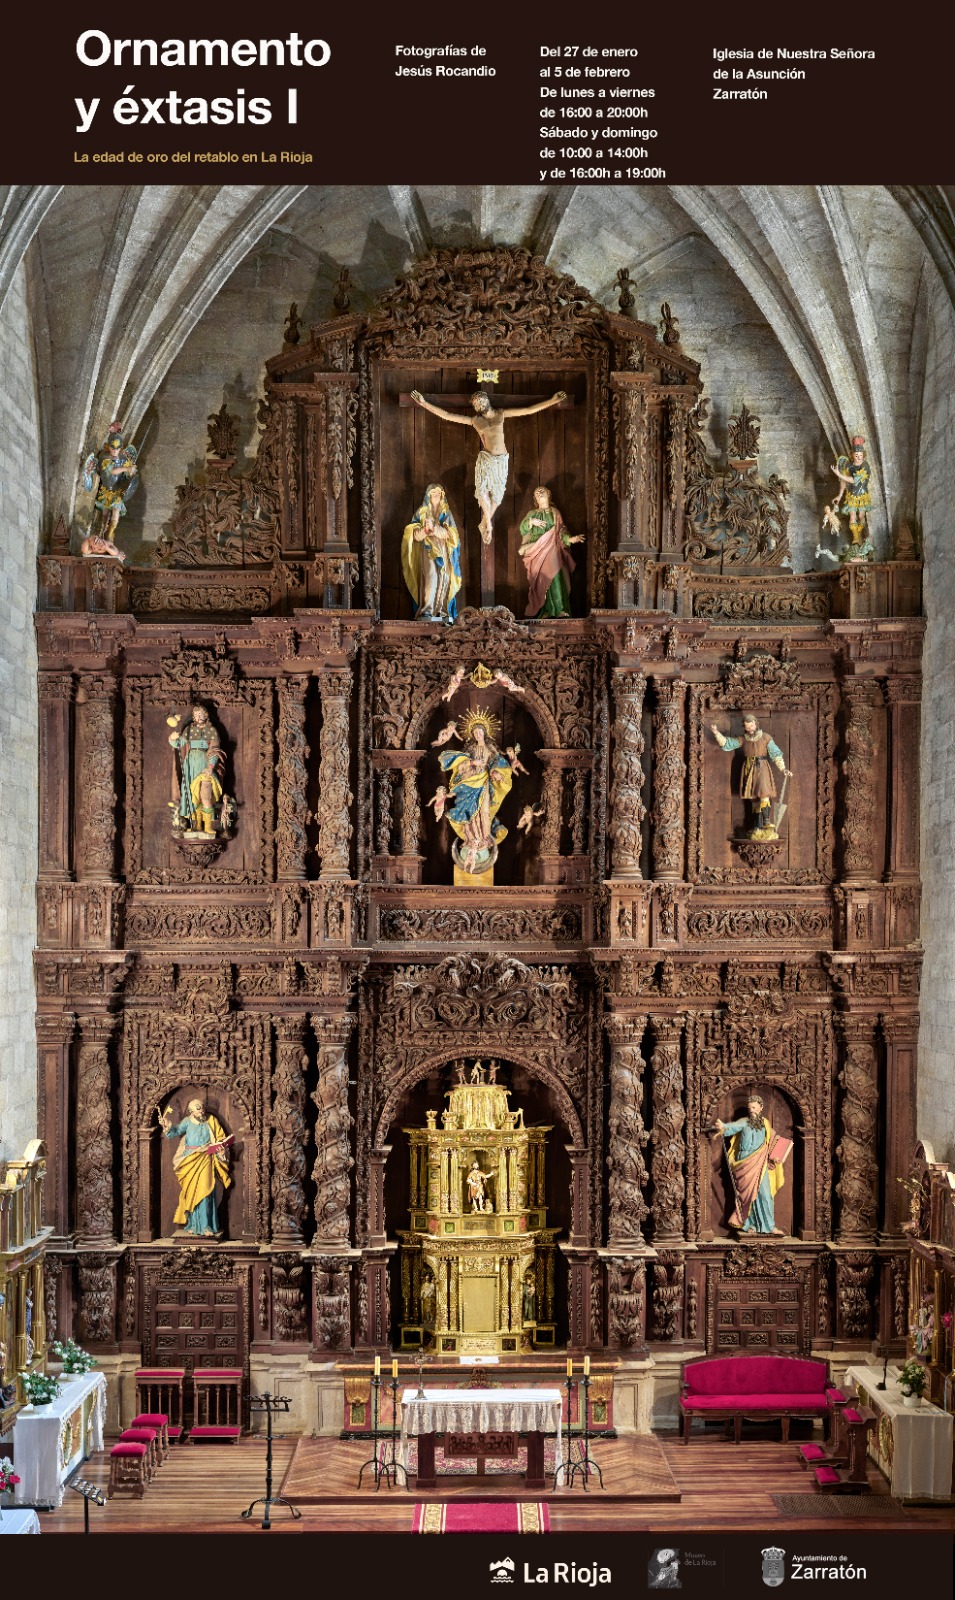 Ornamento y éxtasis I. La edad de oro del retablo en La Rioja